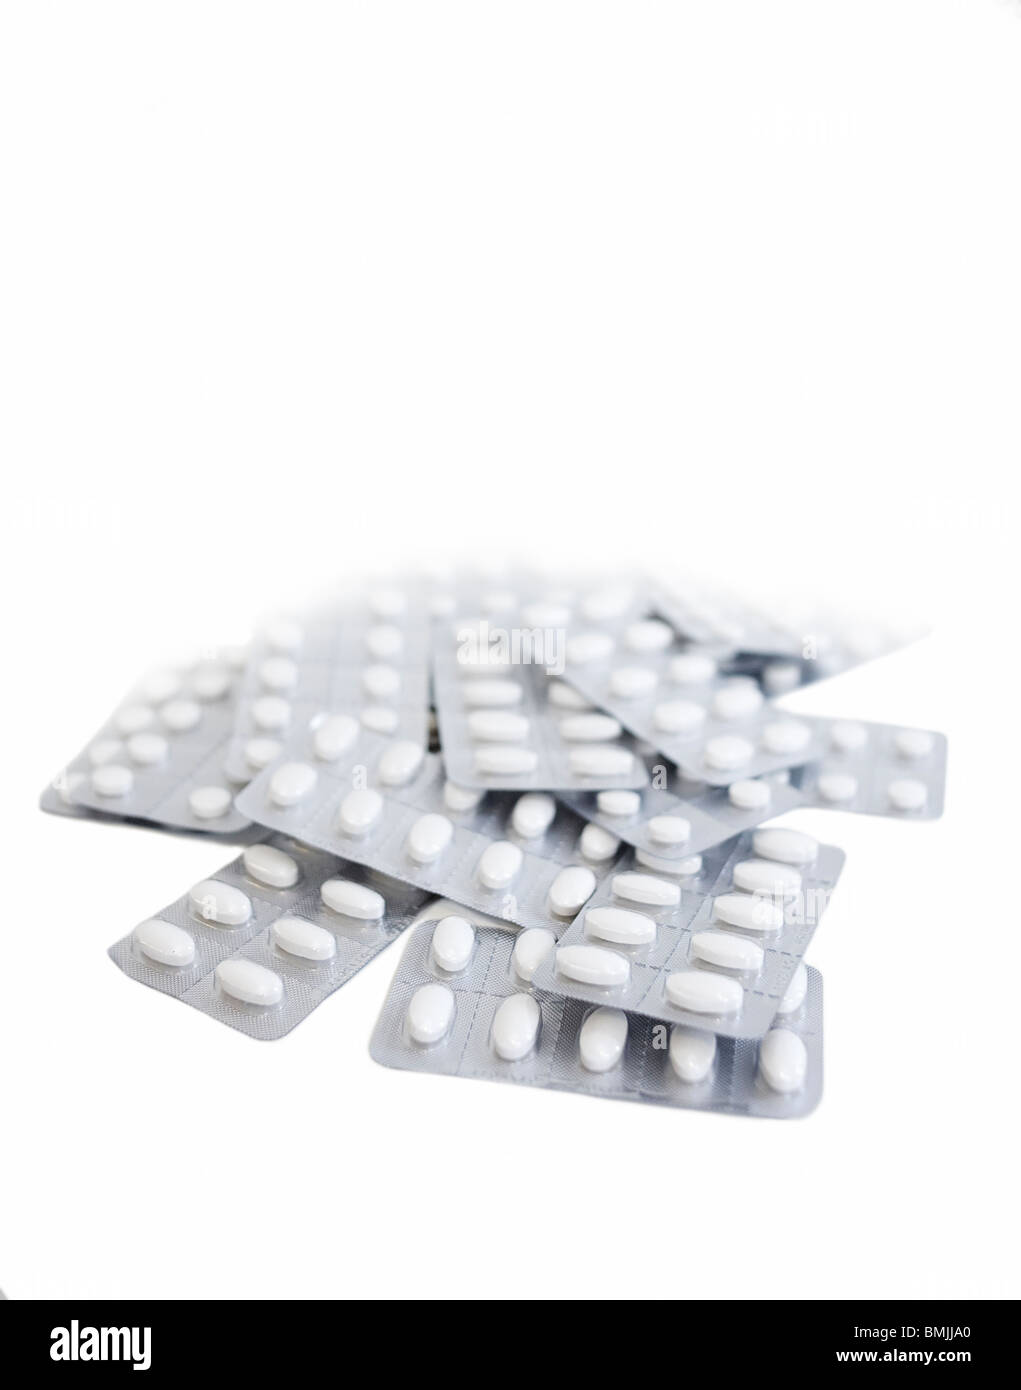 Scandinavia, Sweden, Stockholm, Blister pack of pills against white background Stock Photo